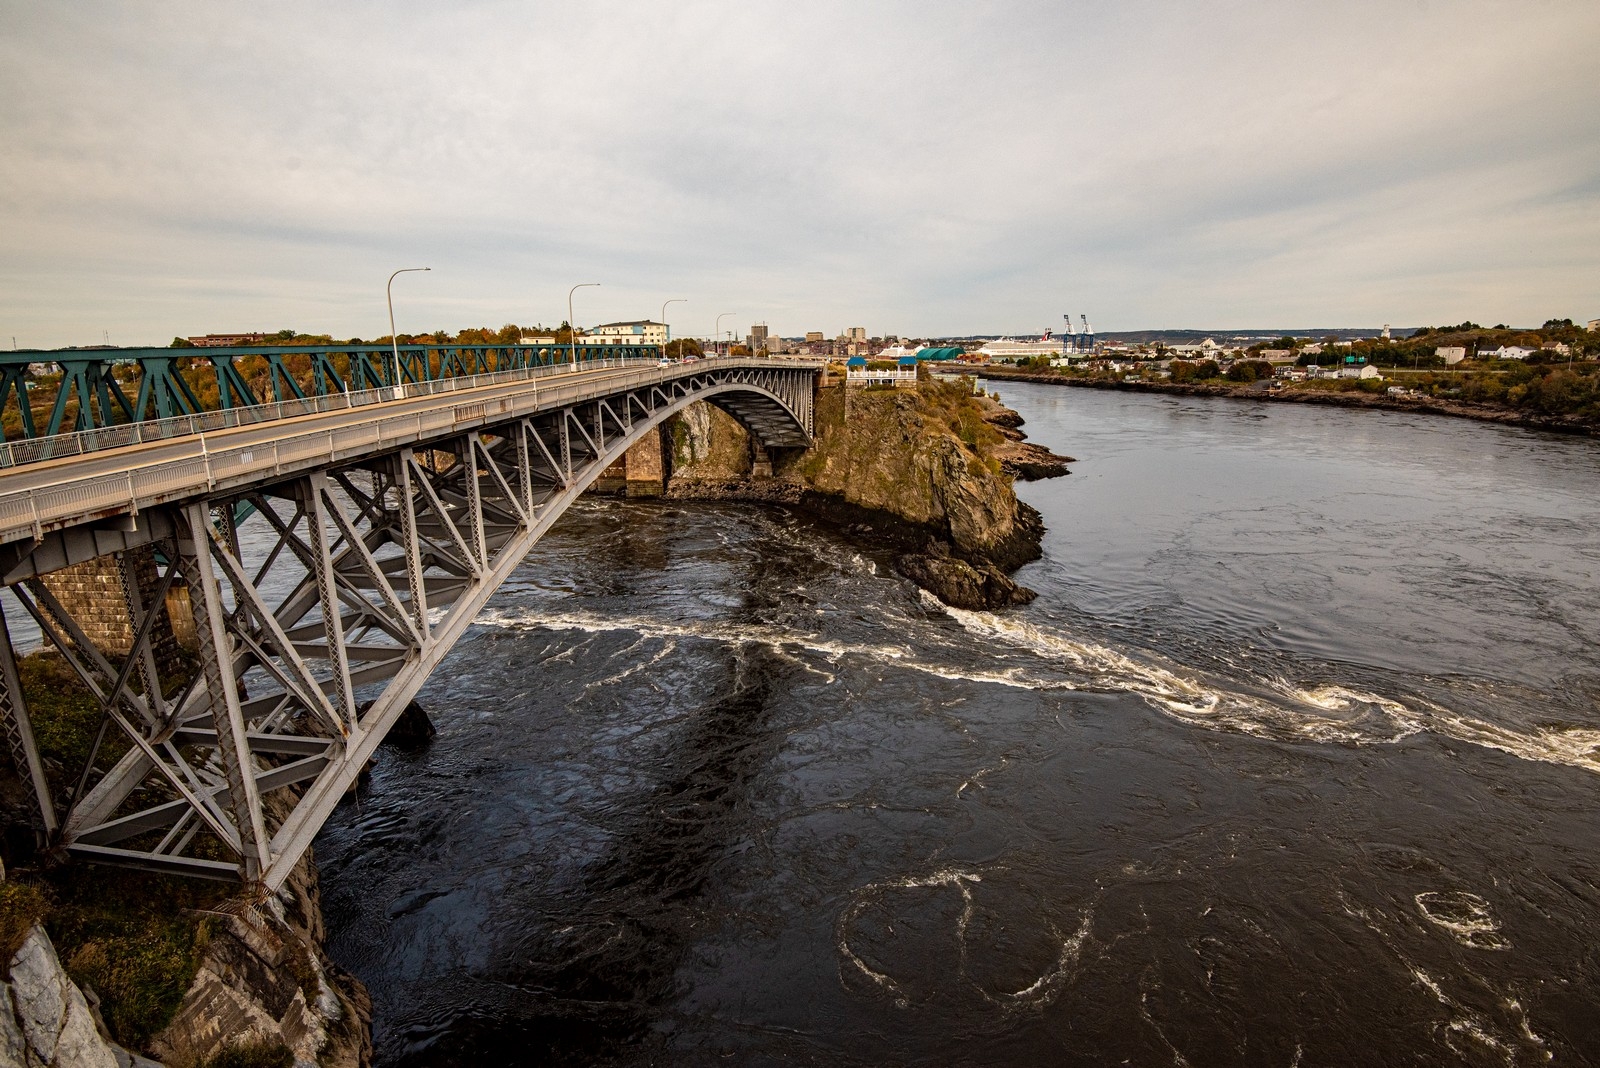 Reversing Falls Bridge in Saint John